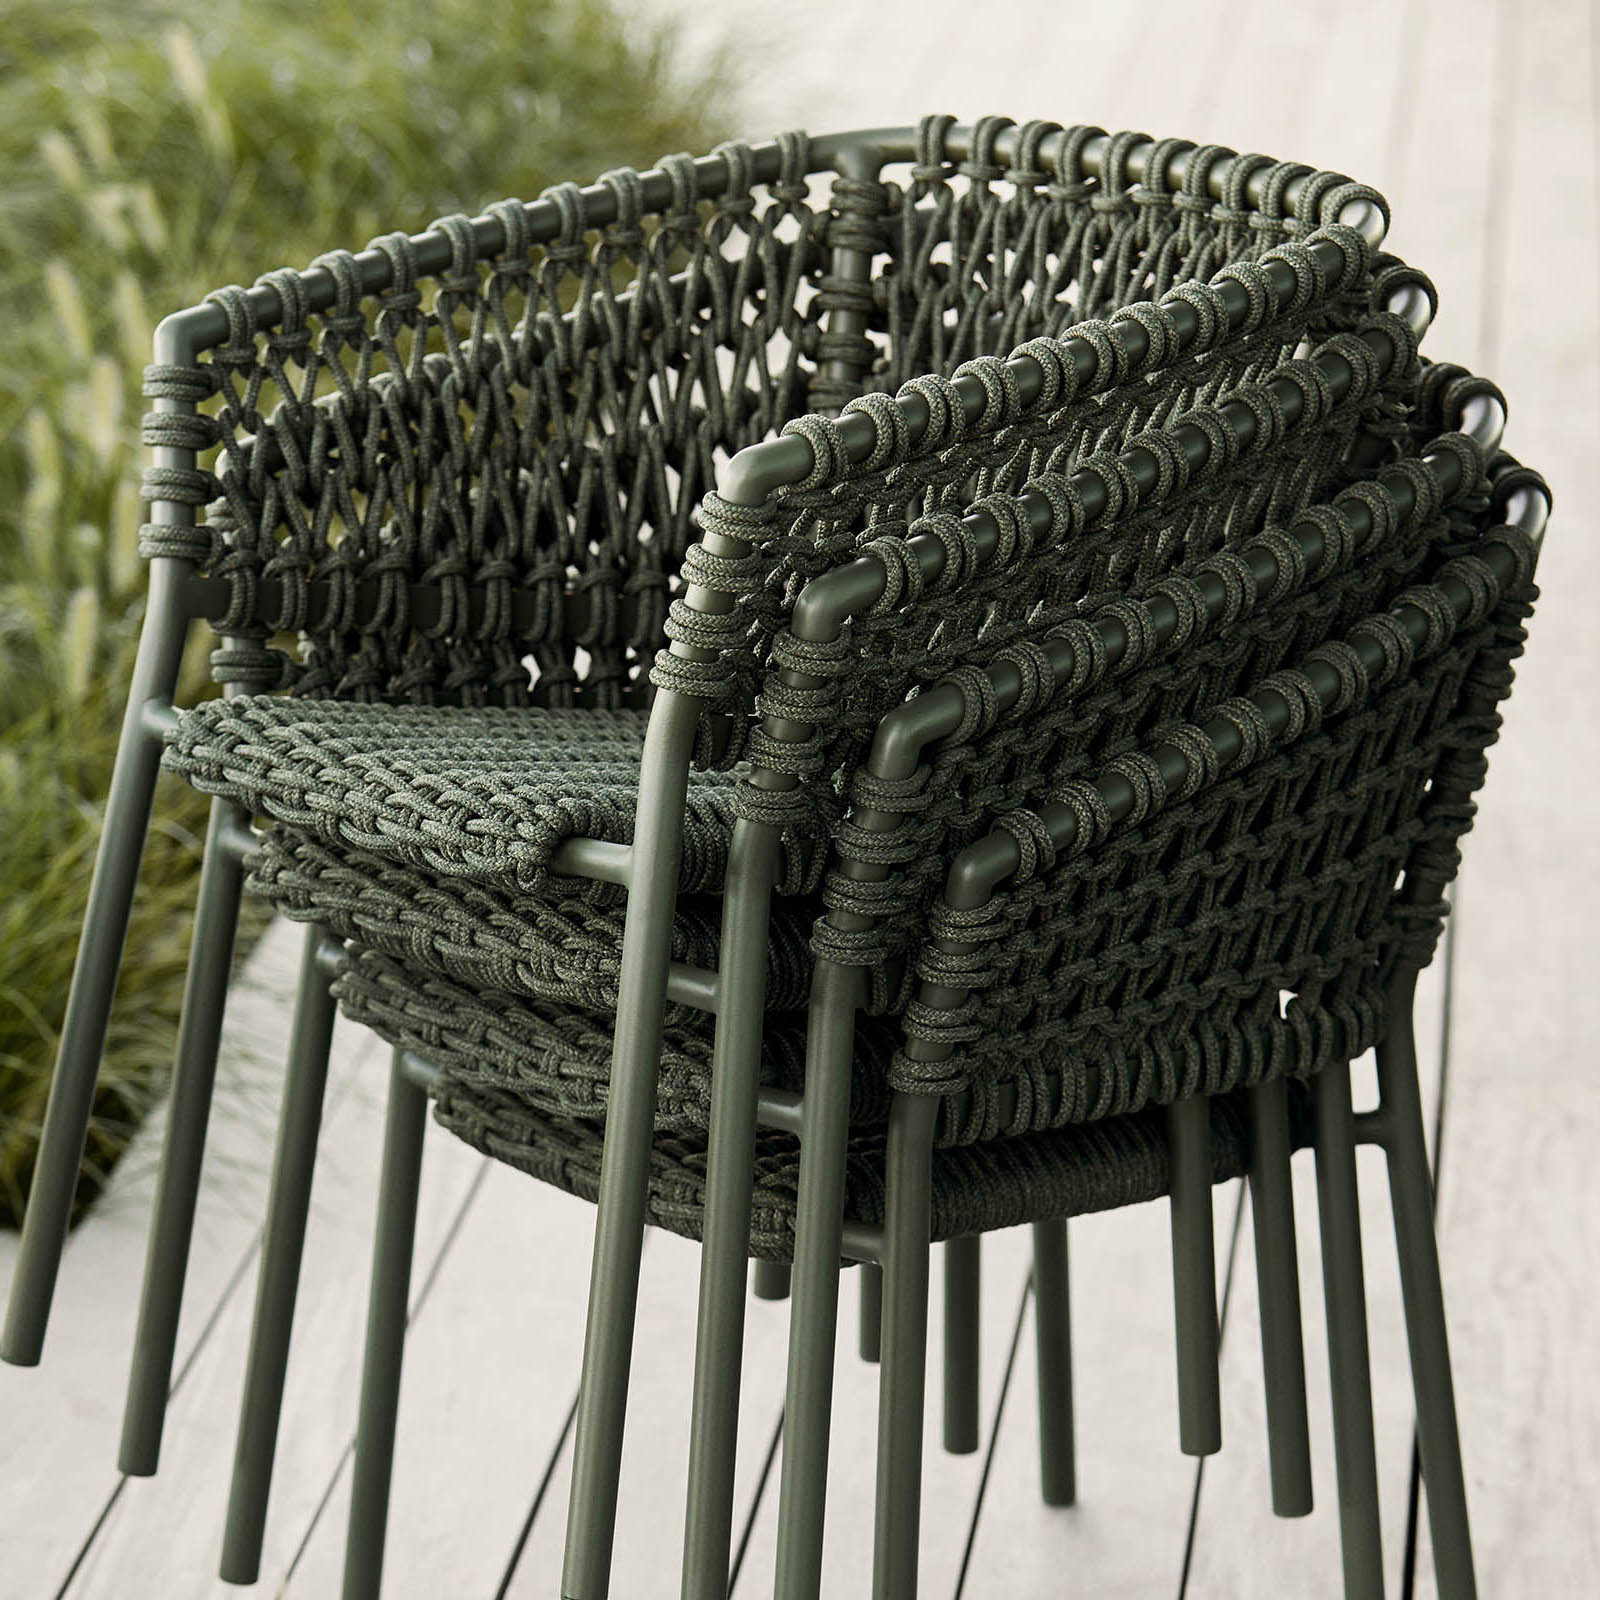 Ocean Stuhl aus Aluminium in Natural mit Kissen aus Cane-line Wove in Dark Green